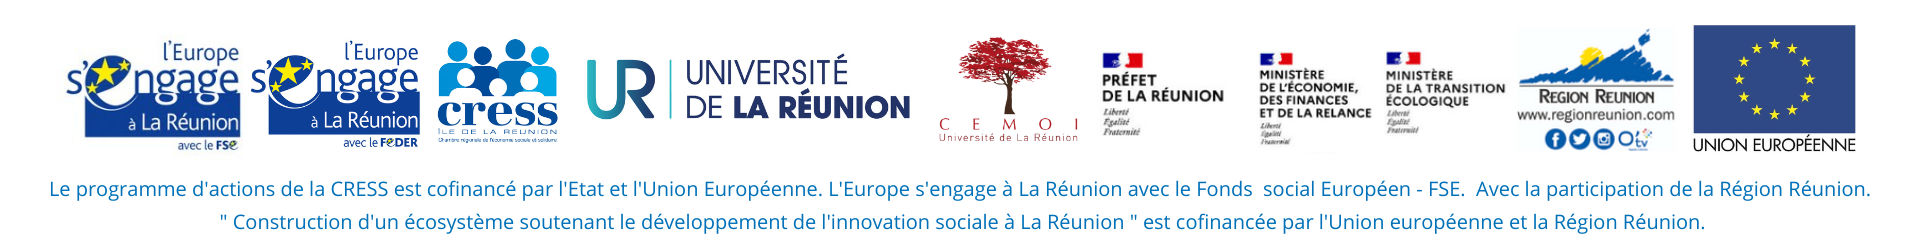 Logos des différents partenaires pour le Lancement de l'enquête régionale sur l'innovation sociale | Source : CRESS de La Réunion - www.cress-reunion.com